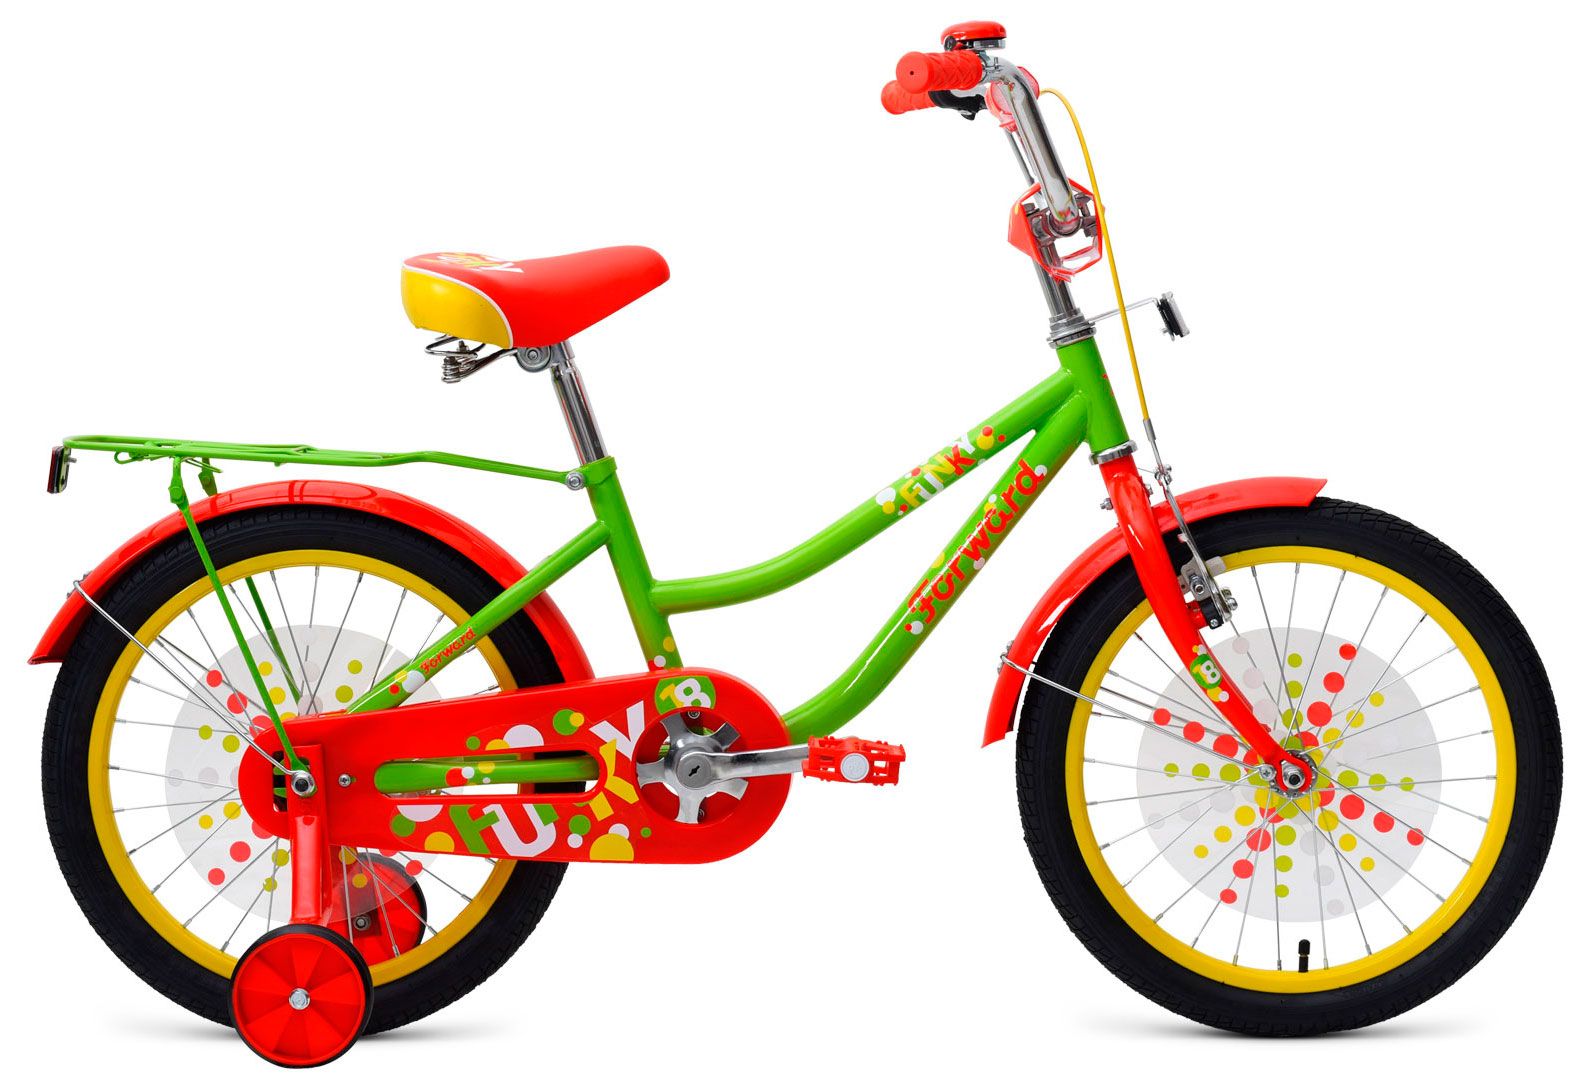  Отзывы о Трехколесный детский велосипед Forward Funky 18 2018